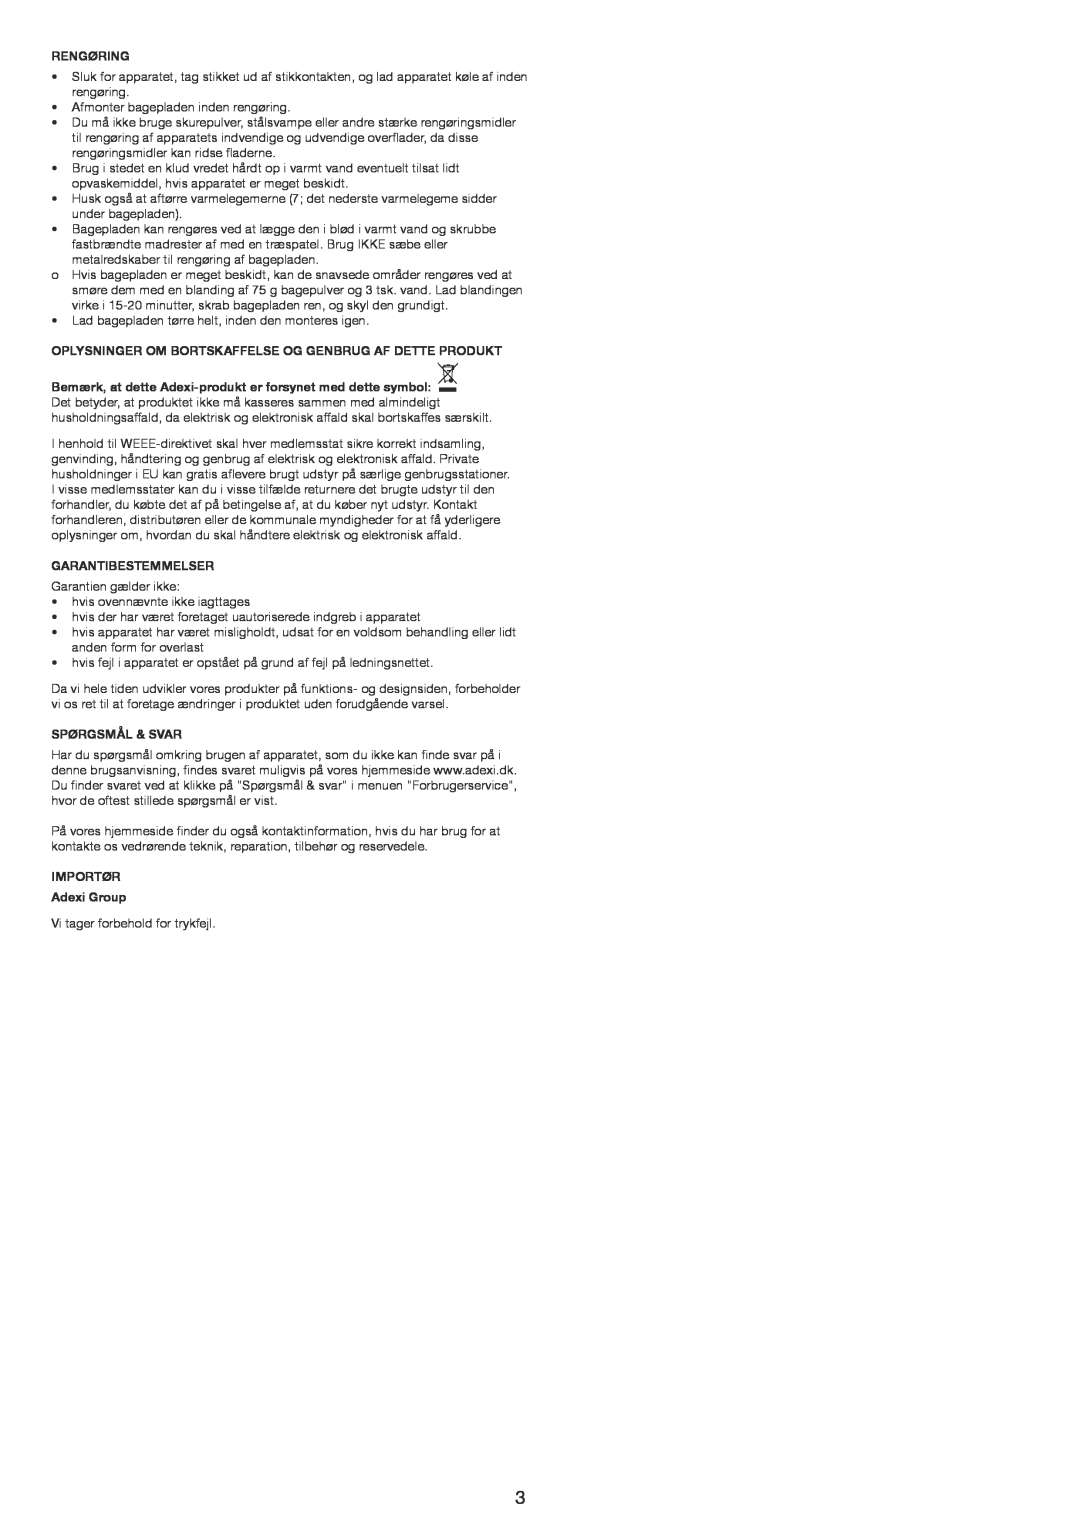 Melissa 643-192 manual Rengøring, Garantibestemmelser, Spørgsmål & Svar, IMPORTØR Adexi Group 